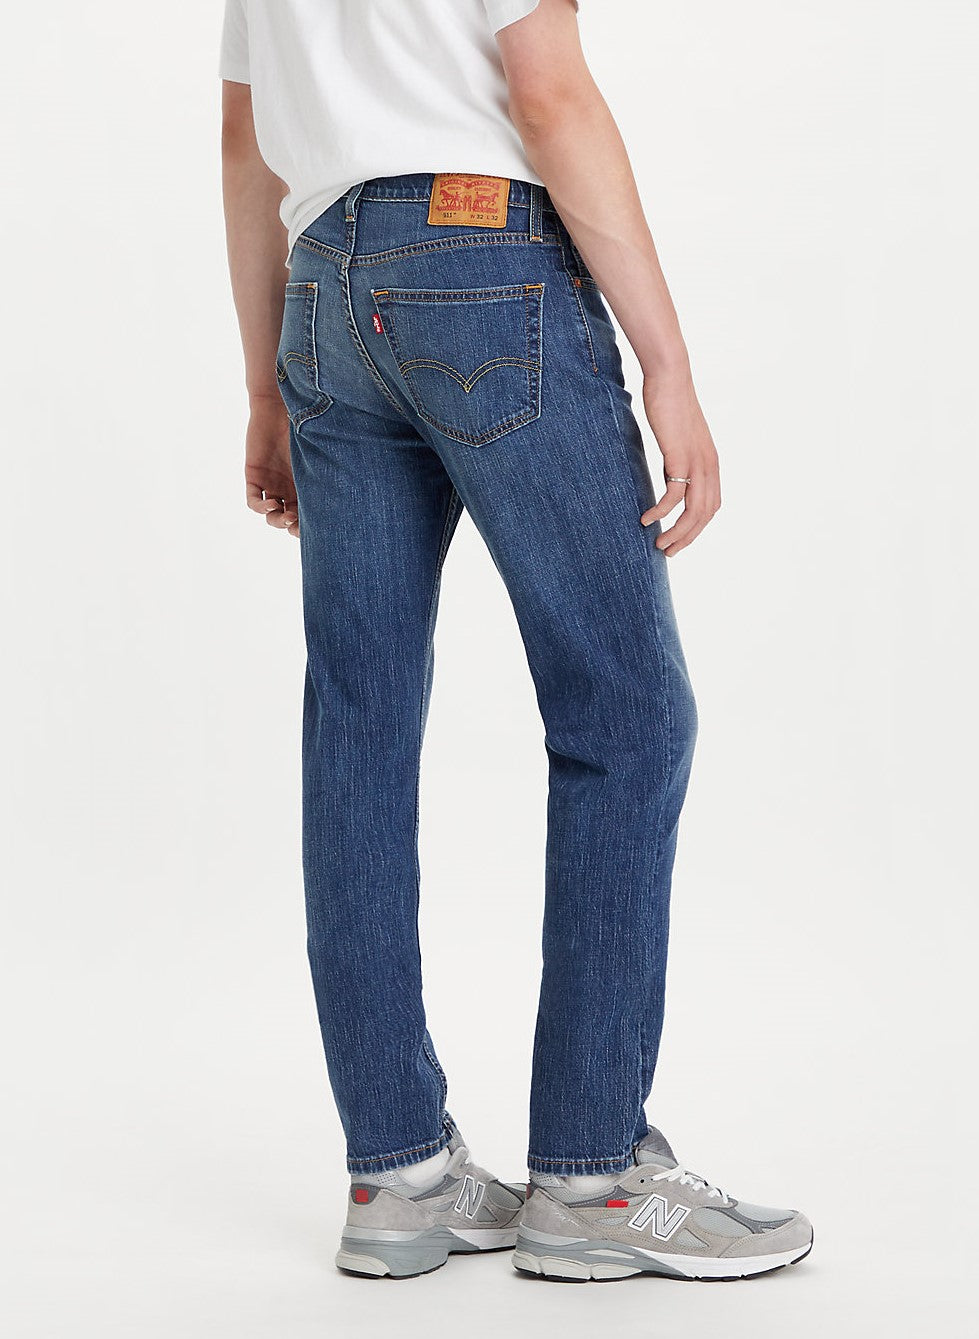 pantalon-jeans-levis-511-slim-p-caballeros